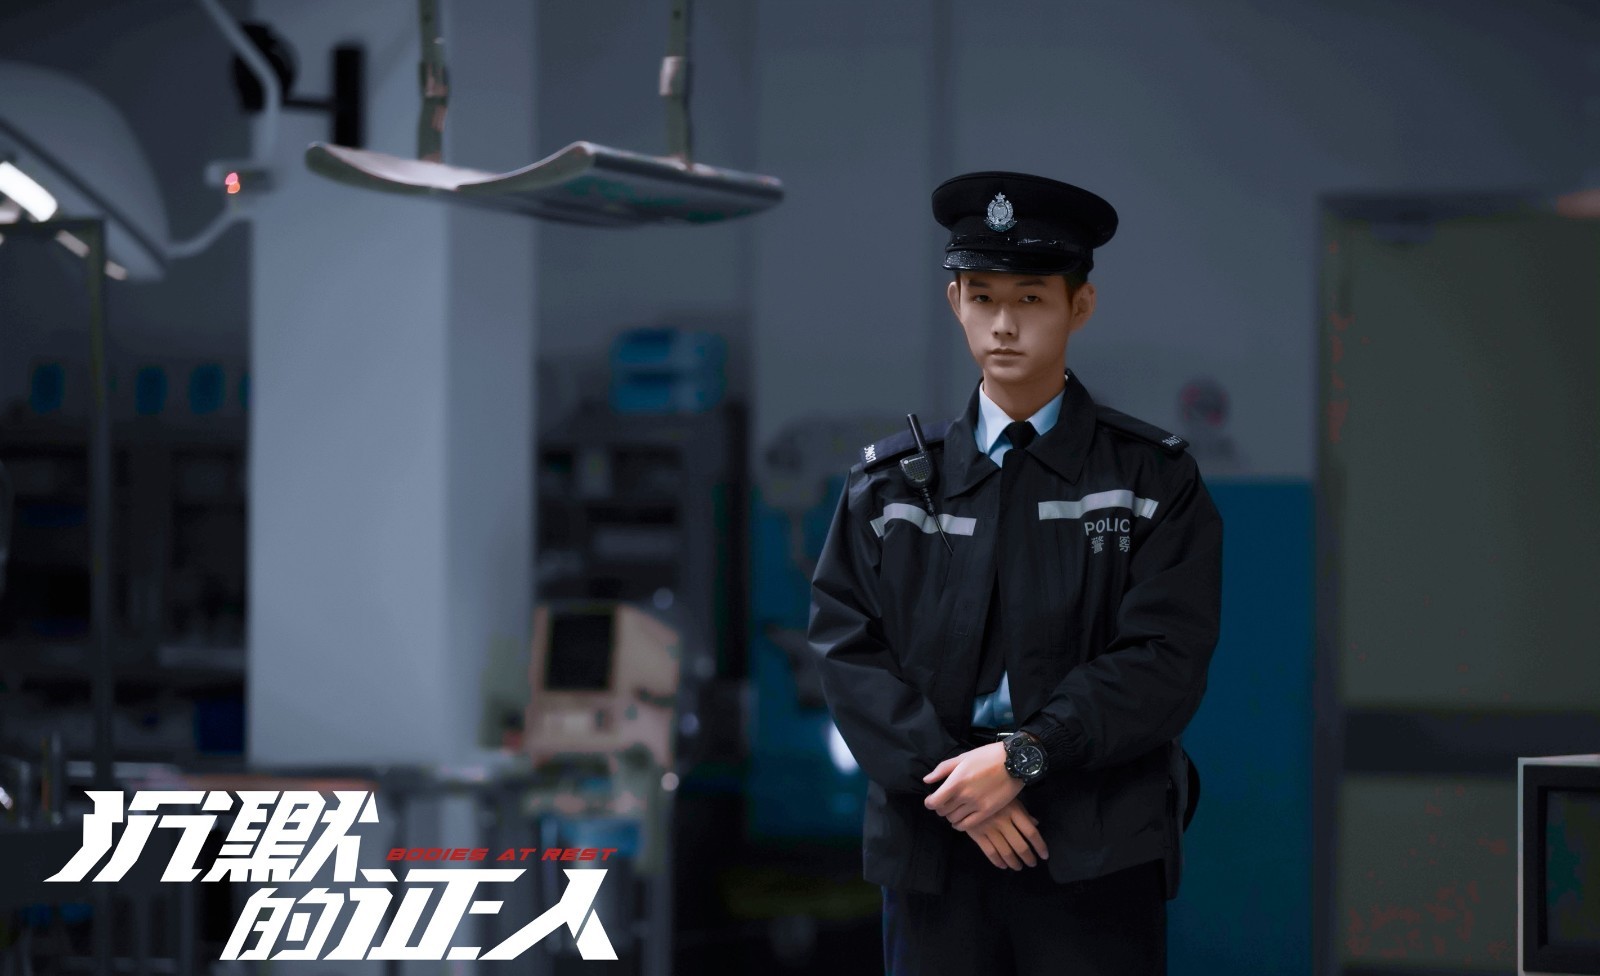 明鹏在影片中饰演警察吴sir,身着警服霸气亮相,时而身着凝视观察,时而